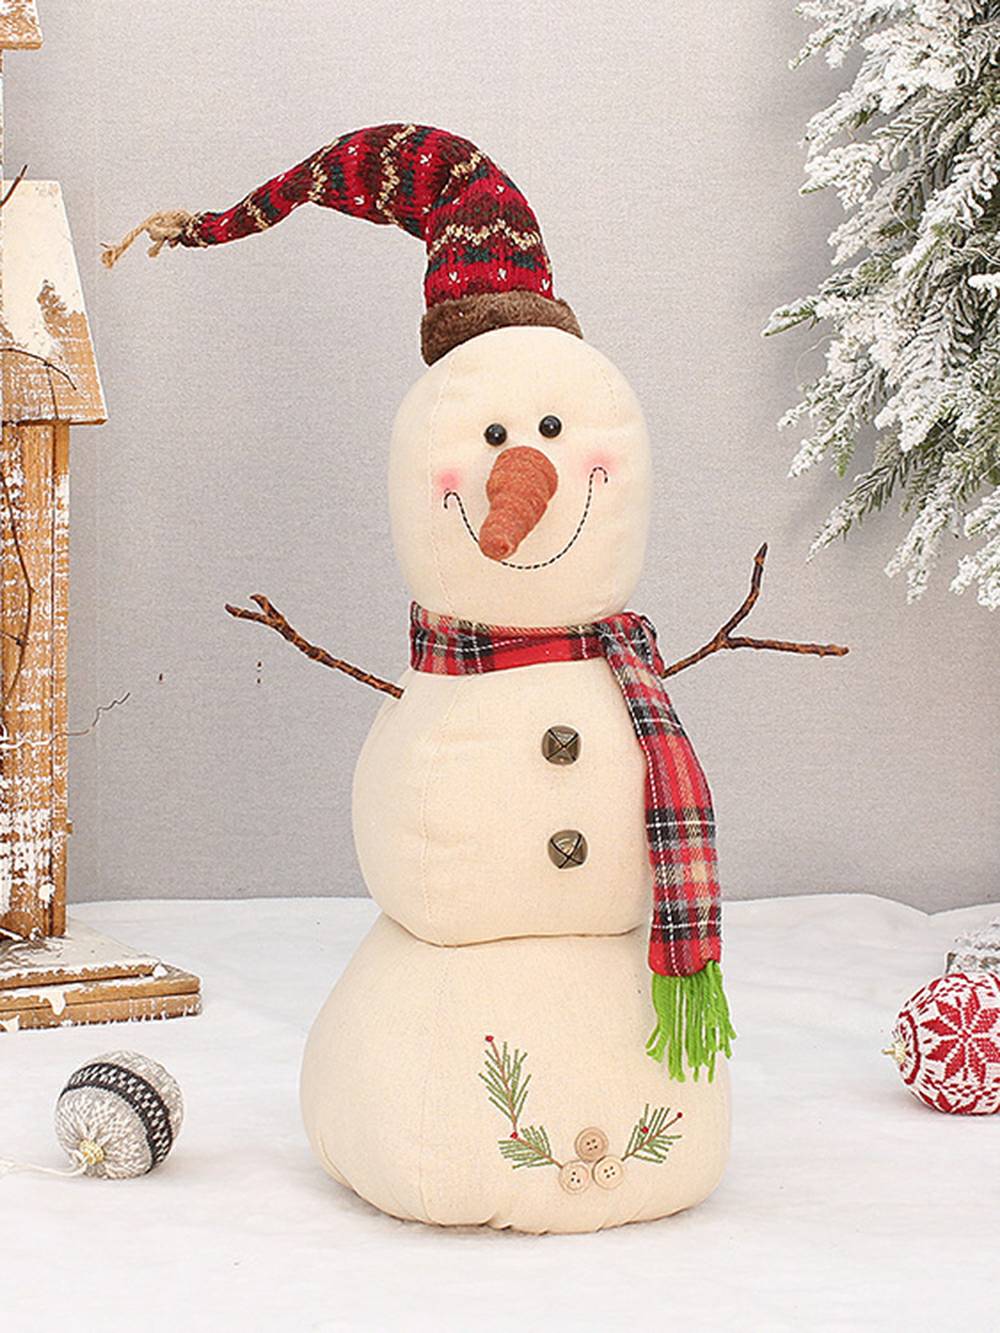 Snowman Doll Dekoratioun Fënster Poppen Ornamenter Chrëschtdag Handwierk